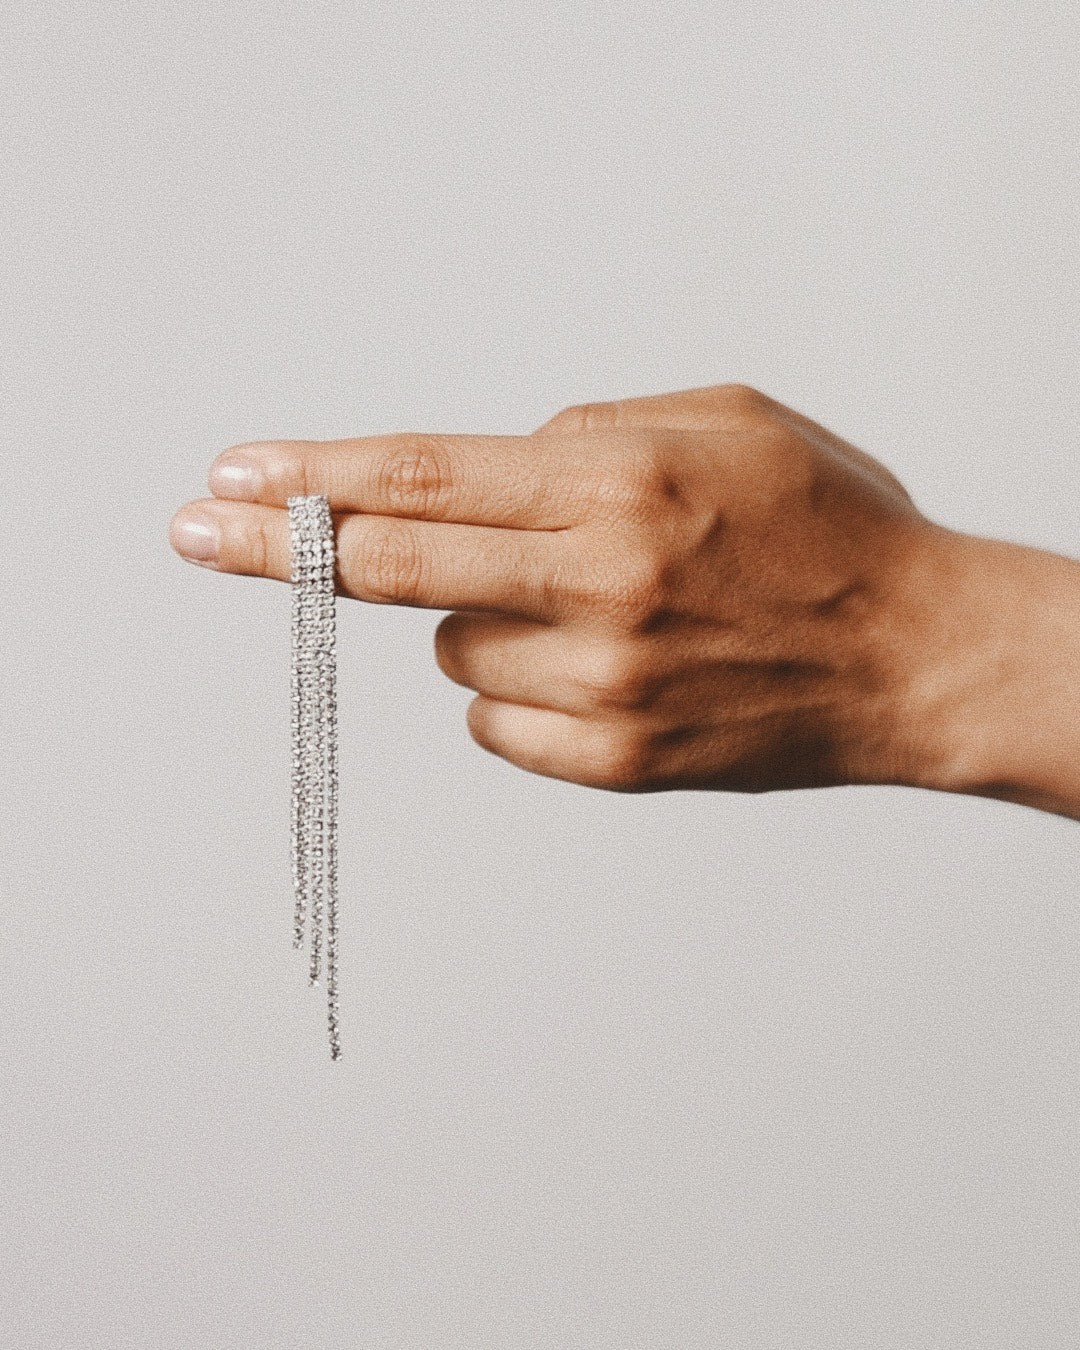 Icy-diamond-drop-silver earrings between fingers